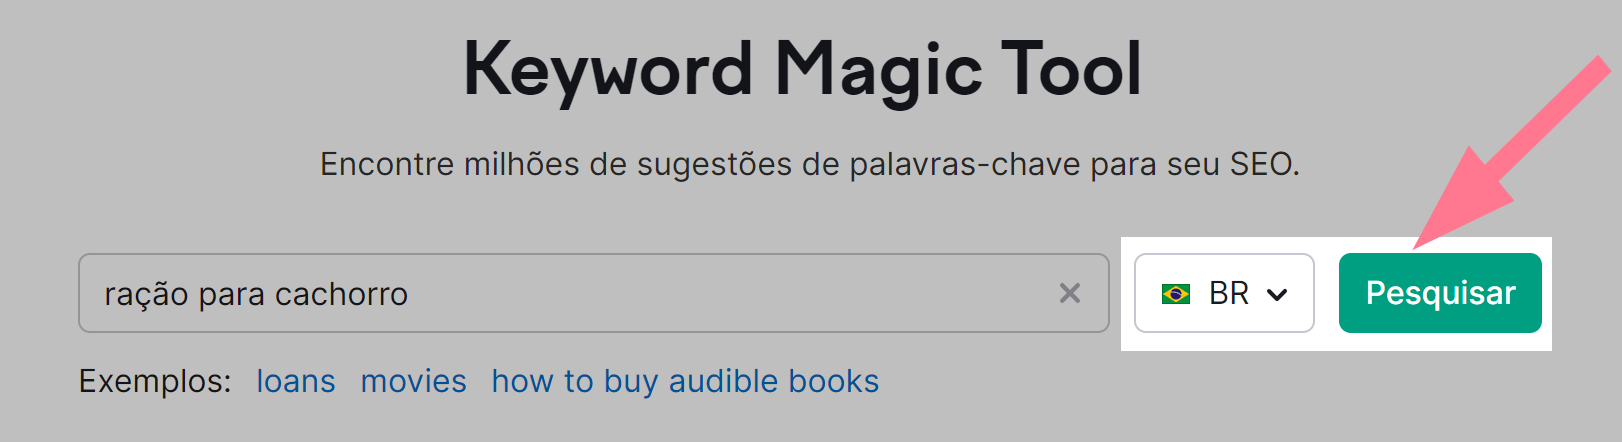 botão de pesquisar na ferramenta keyword magic tool para pesquisa de palavras-chave